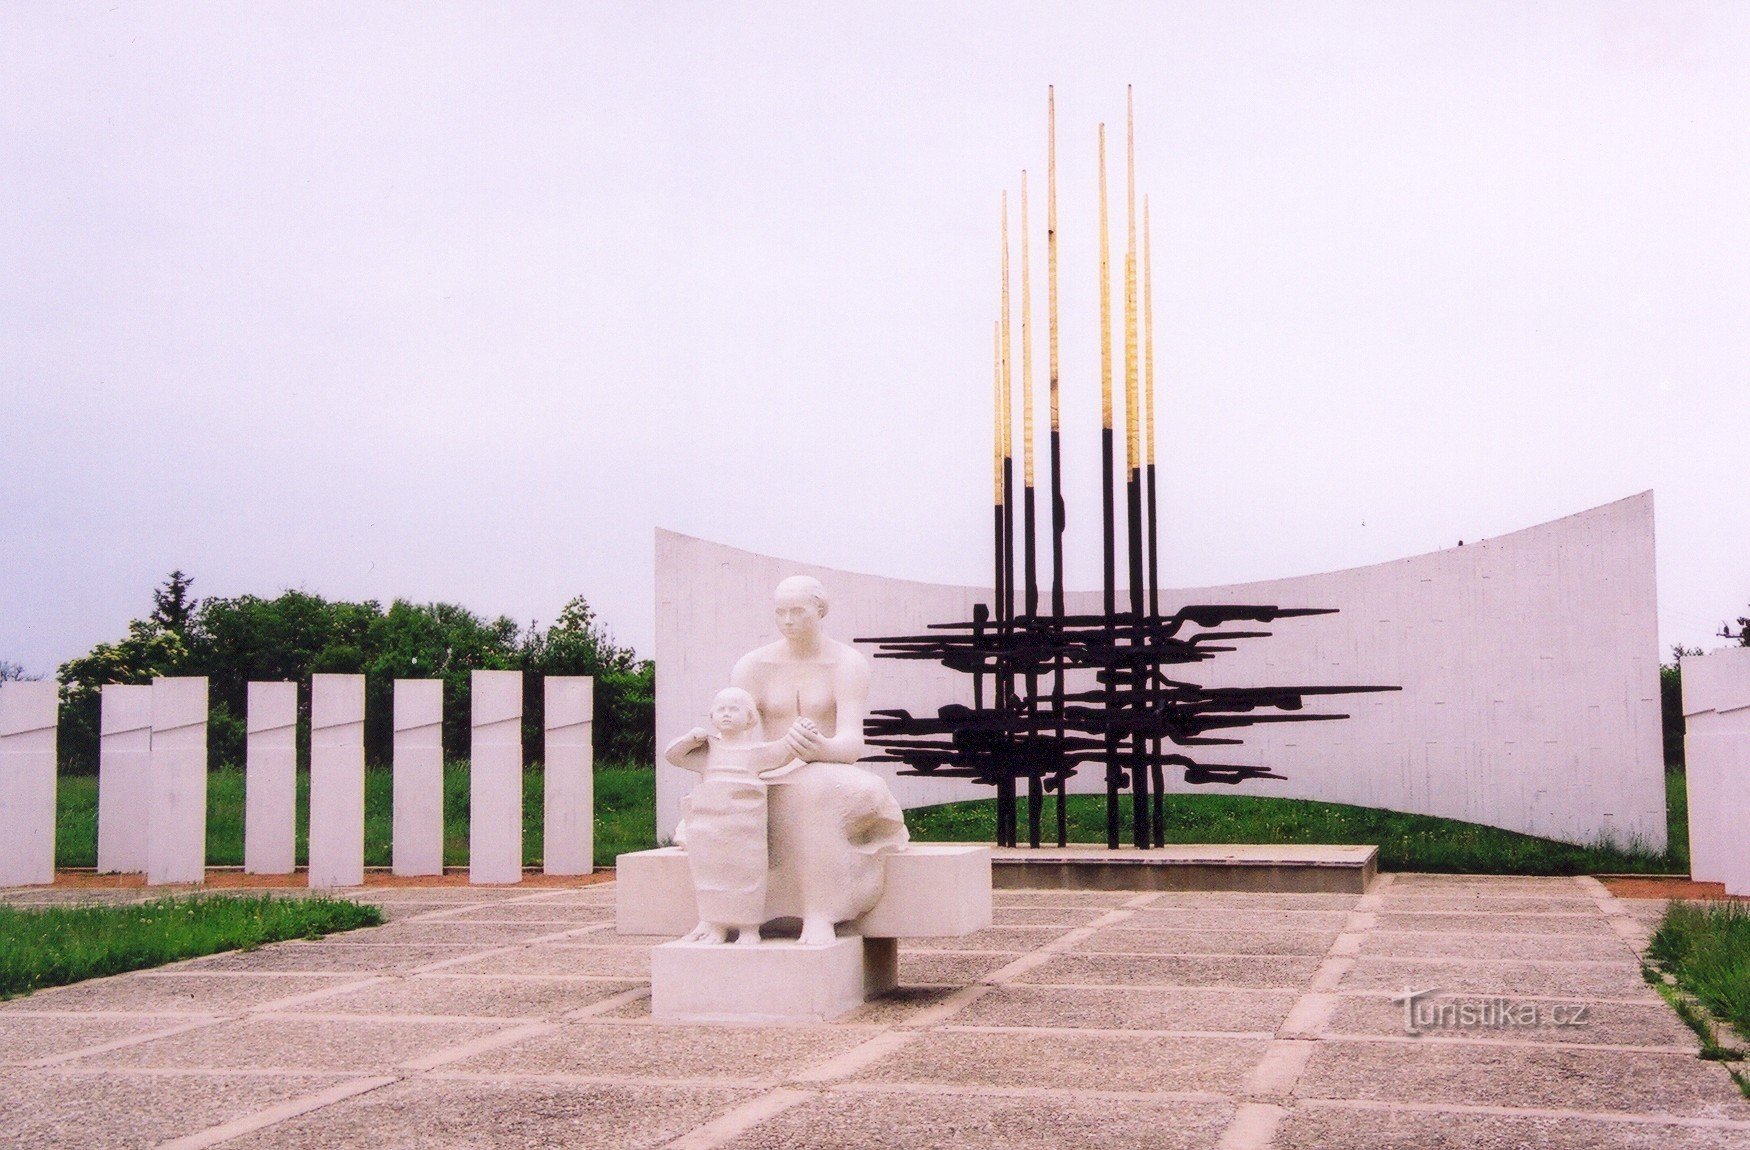 Orechov - monument